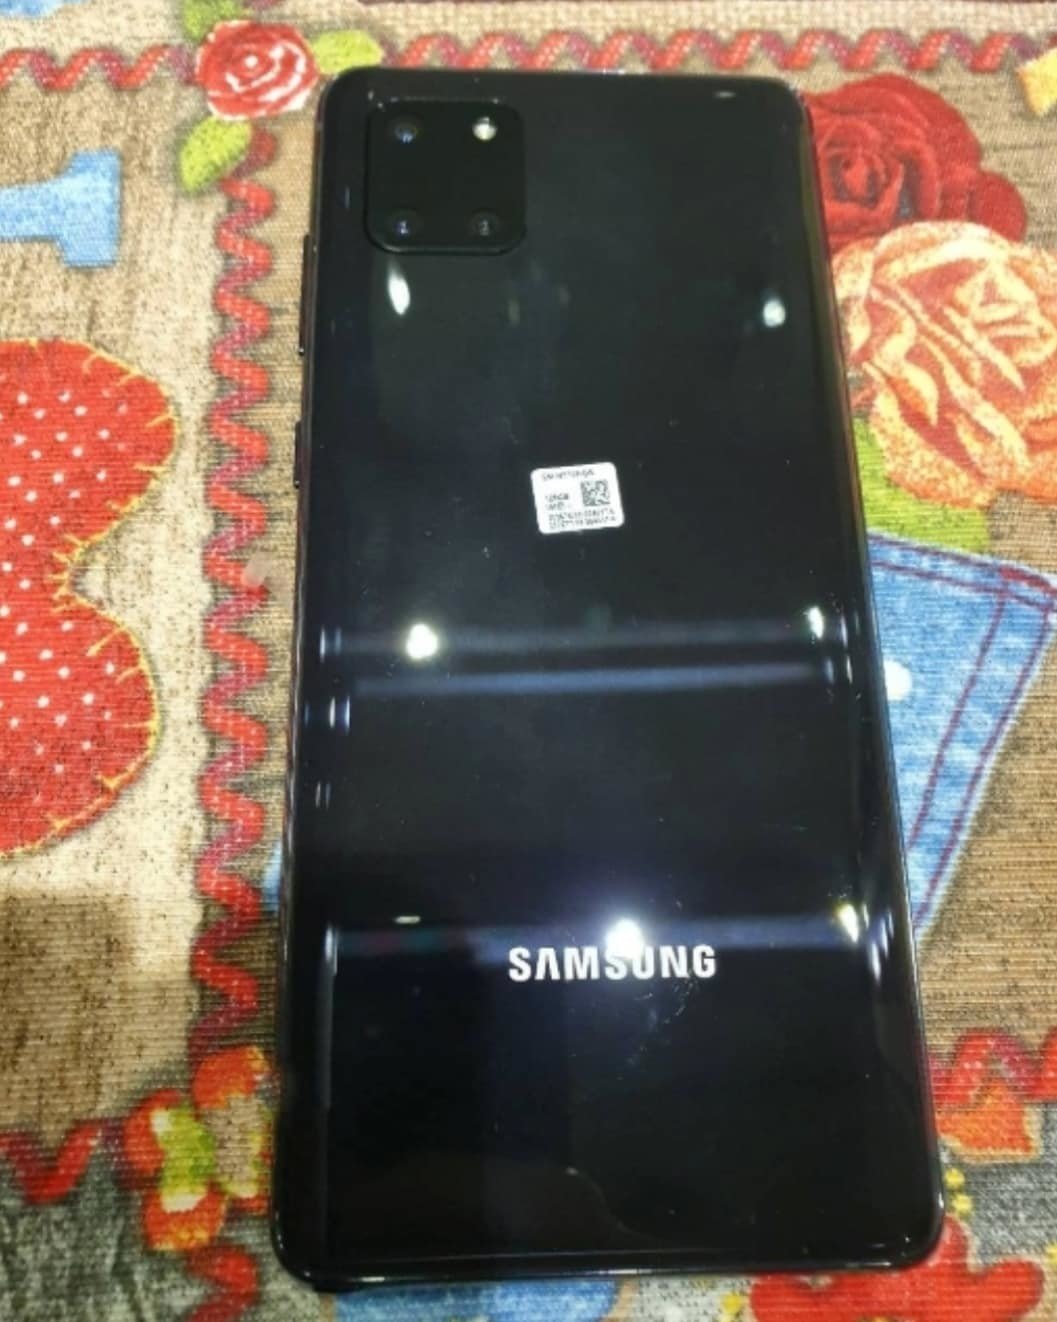 Galaxy Note 10 Lite'ın Yeni Fotoğrafları Sızdı